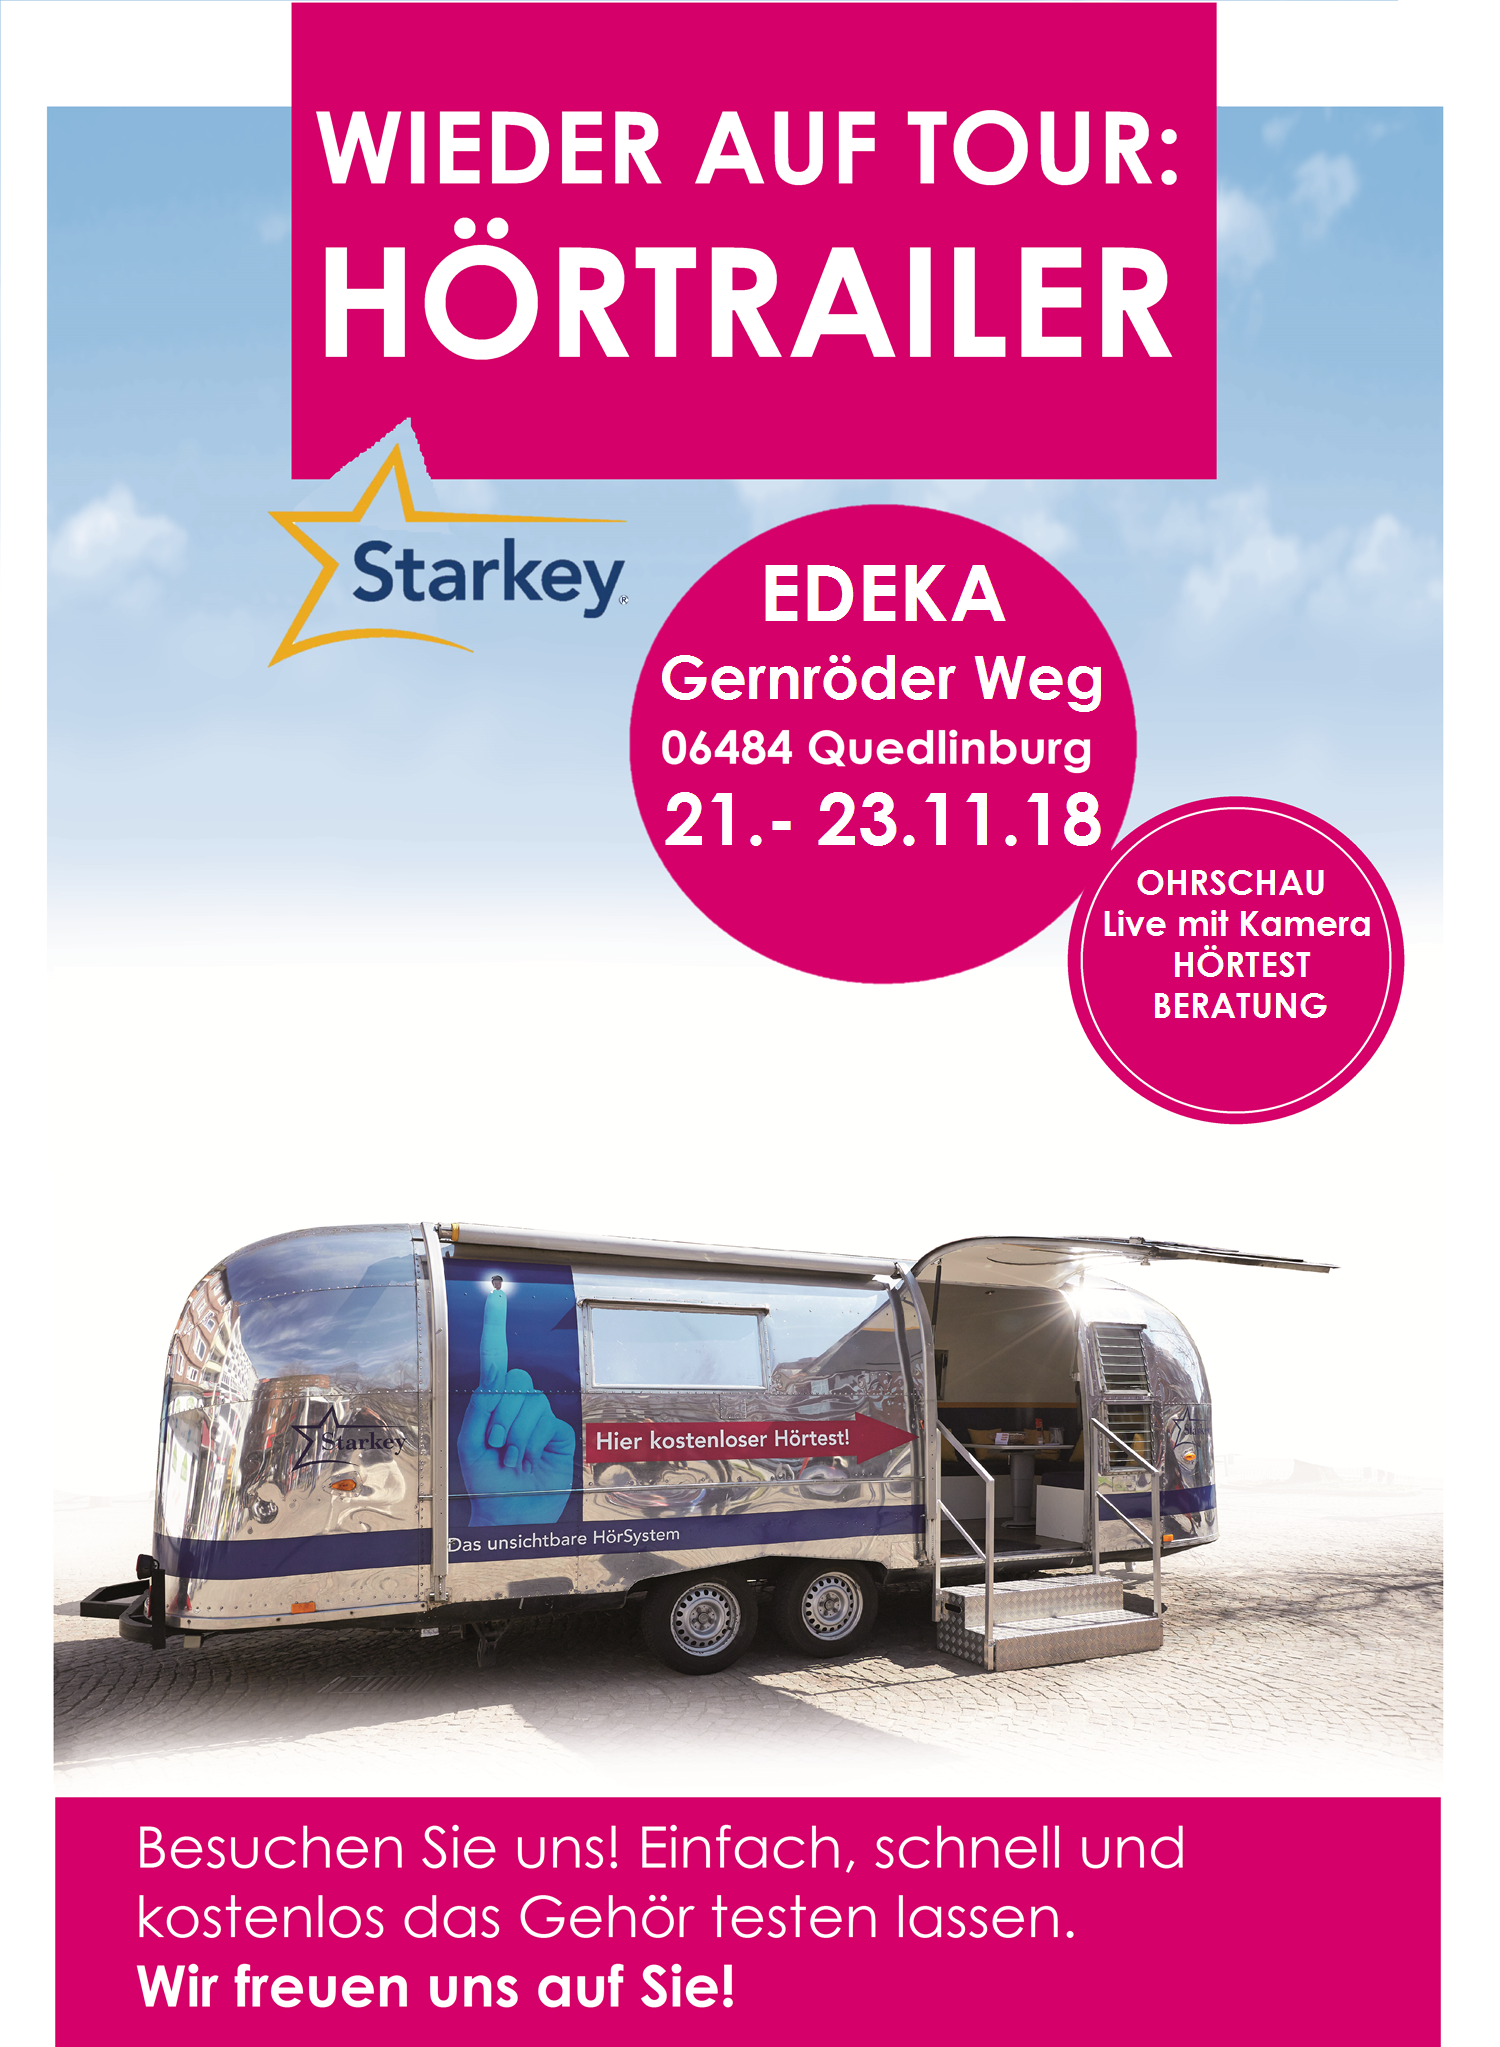 23.11.2018 ist wieder der Starkey Hörtrailer für Sie auf dem EDEKA Parkplatz, im Gernröder Weg in Quedlinburg.